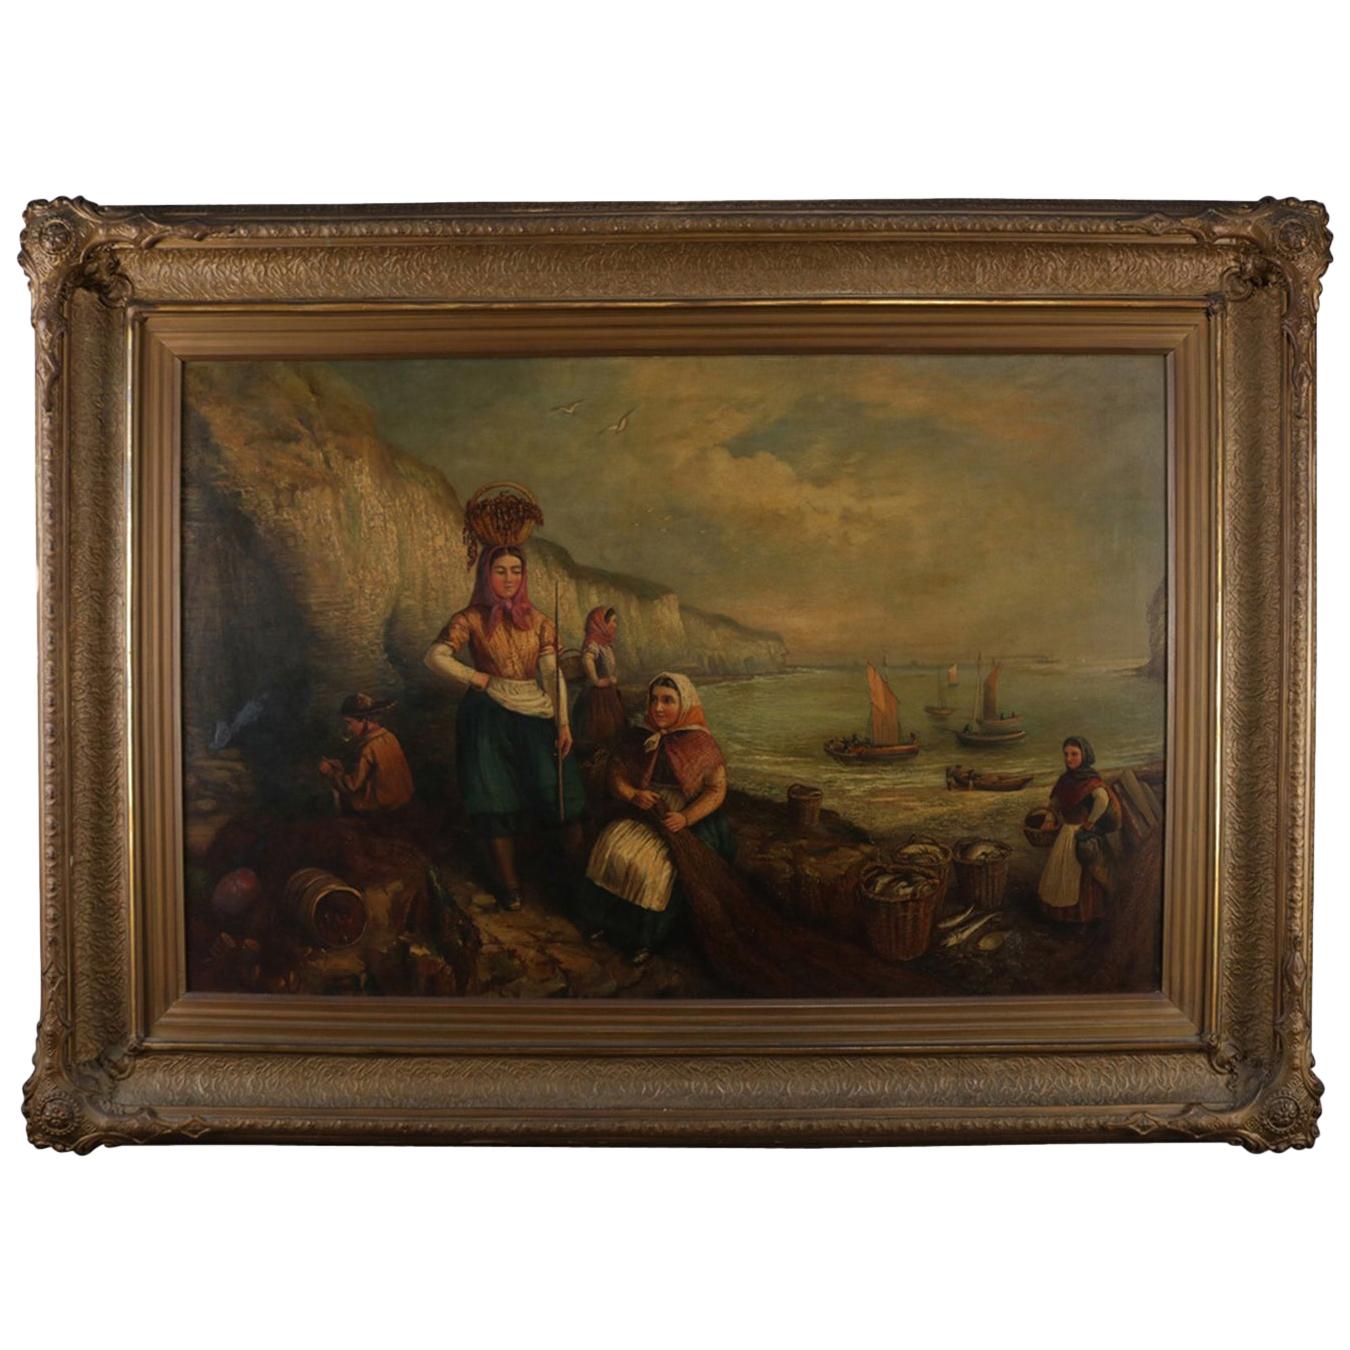 Monumental Antique Italian Oil on Canvas Genre Scene at Harbor, 19th Century